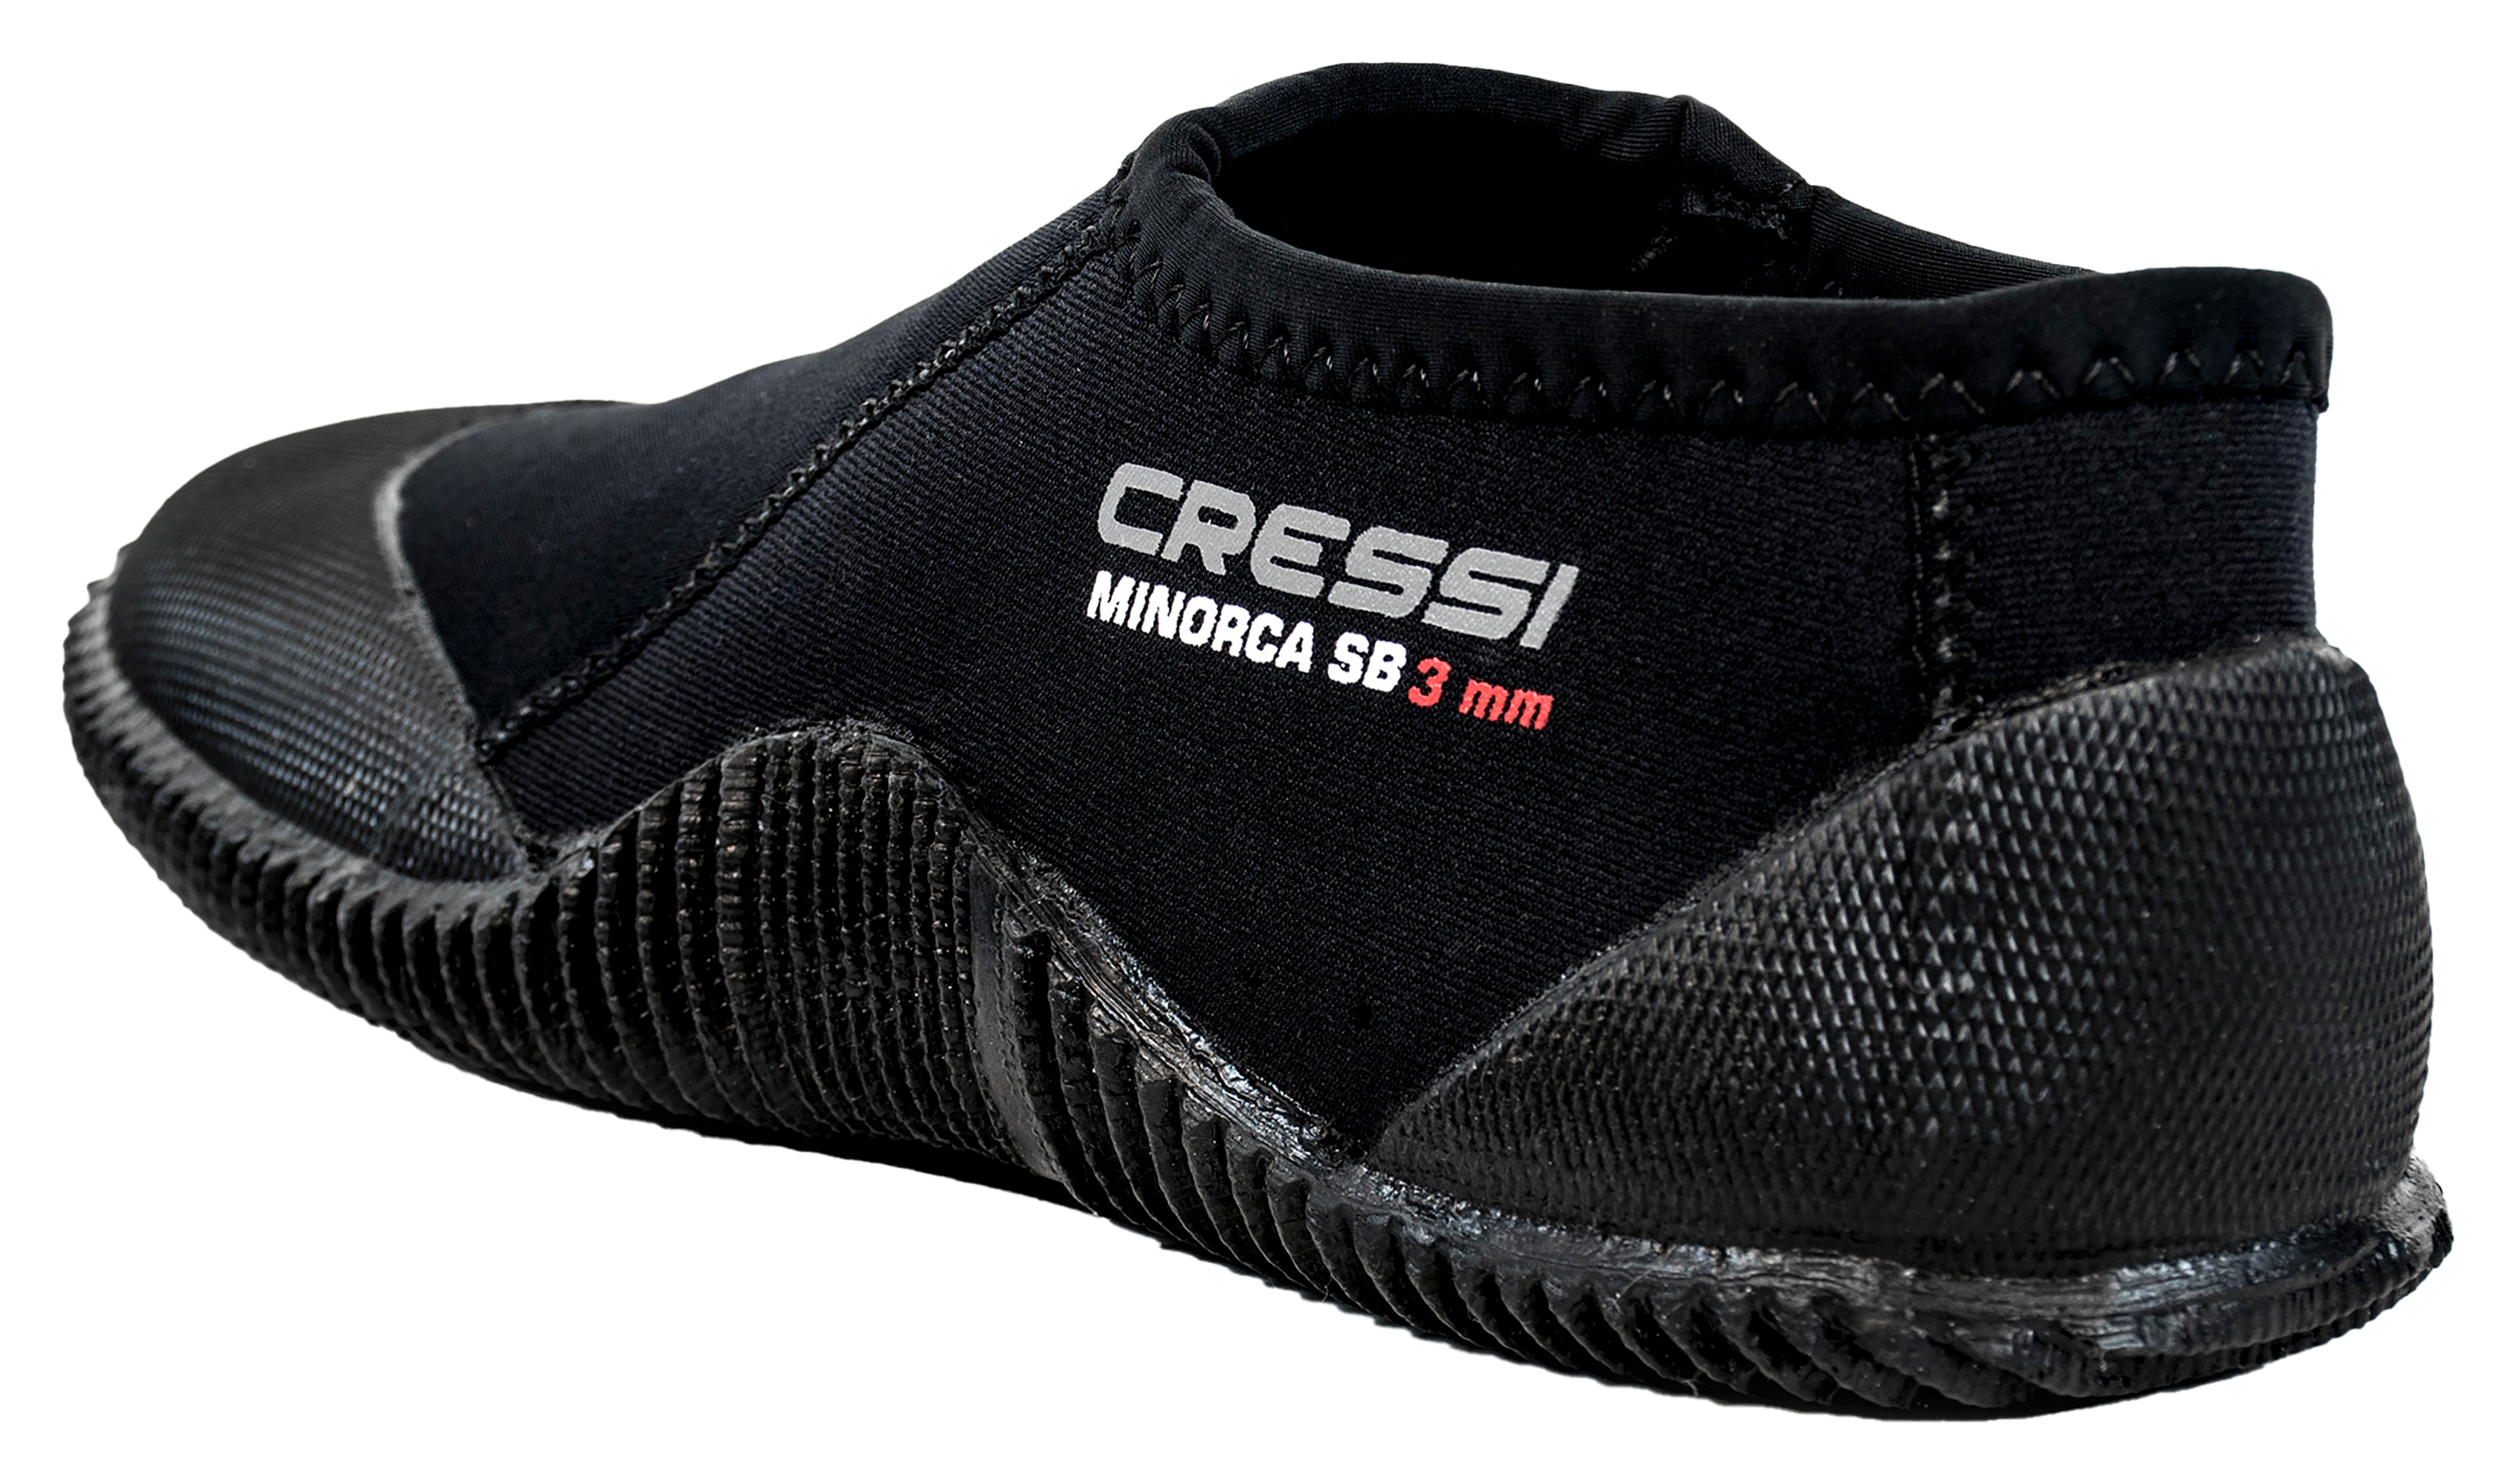 Cressi Minorca Short Boots for Men - Black - 11